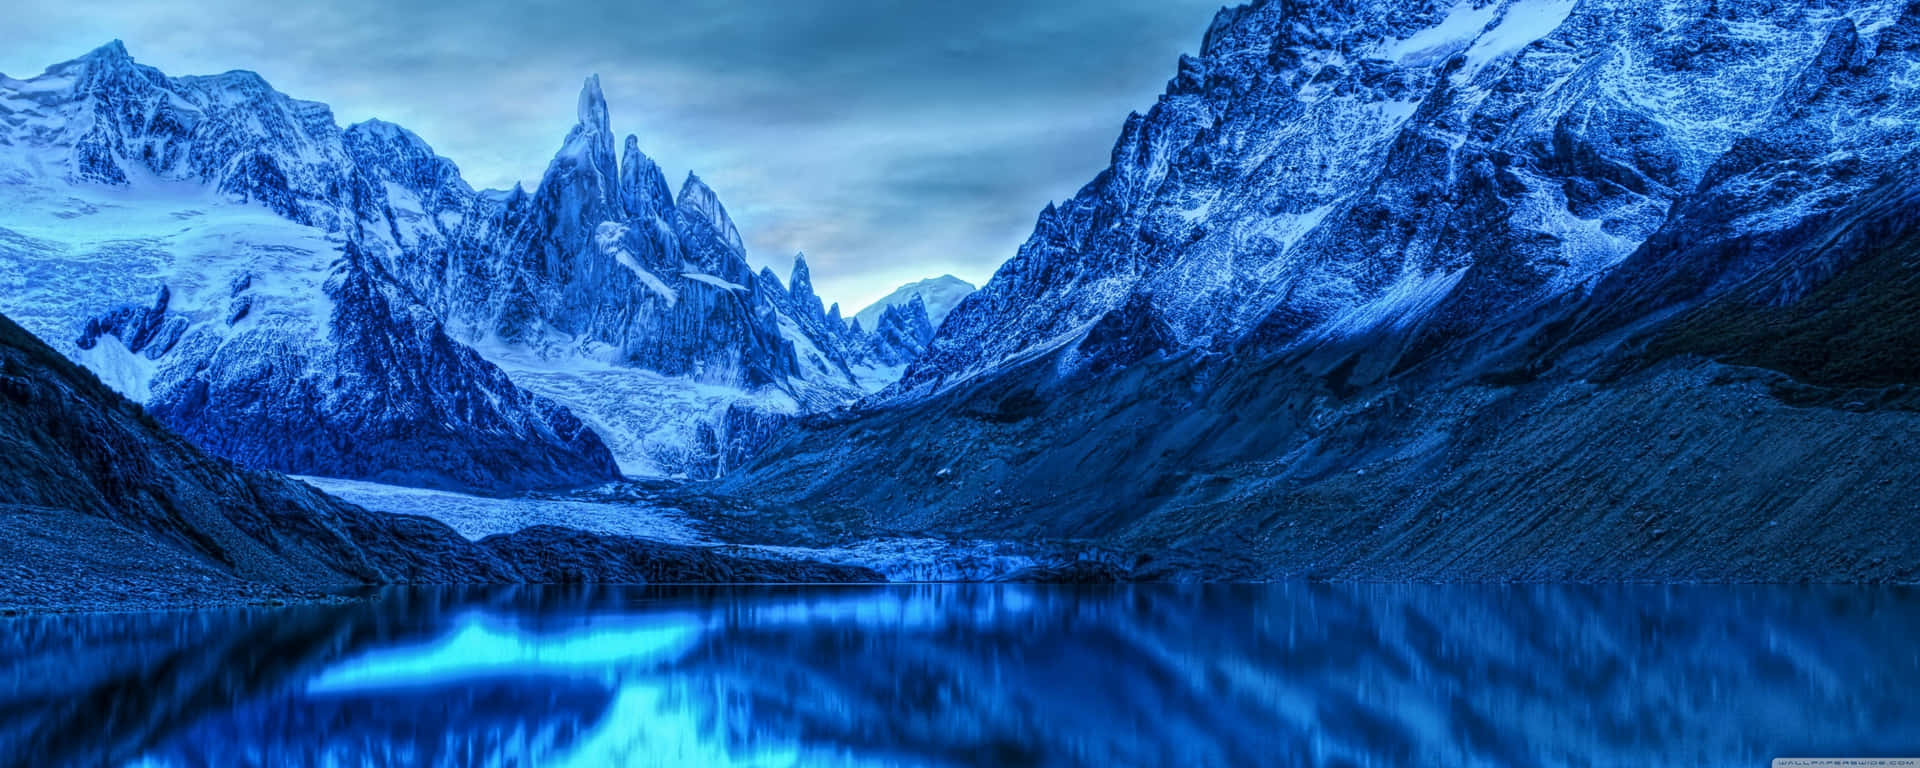 Einblaues Gebirge Mit Einem See Im Hintergrund Wallpaper